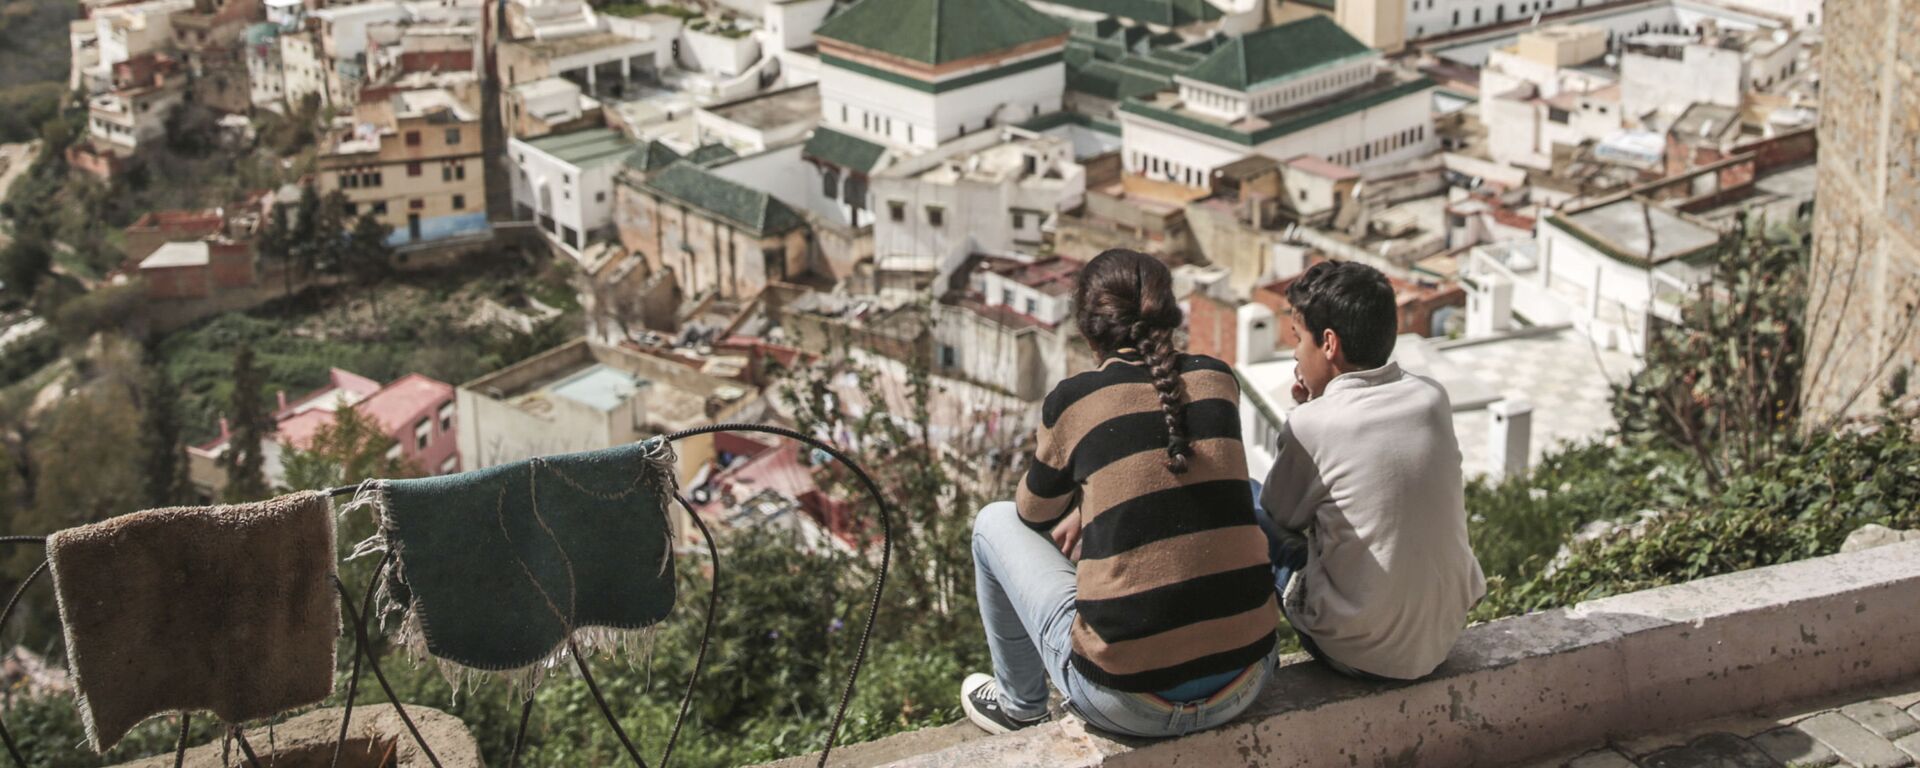 أطفال يتأملون قرية مولاي إدريس من أعلى سطح منزل، بالقرب من مكناس، المغرب 24 فبراير/ شباط 2017 - سبوتنيك عربي, 1920, 10.07.2019